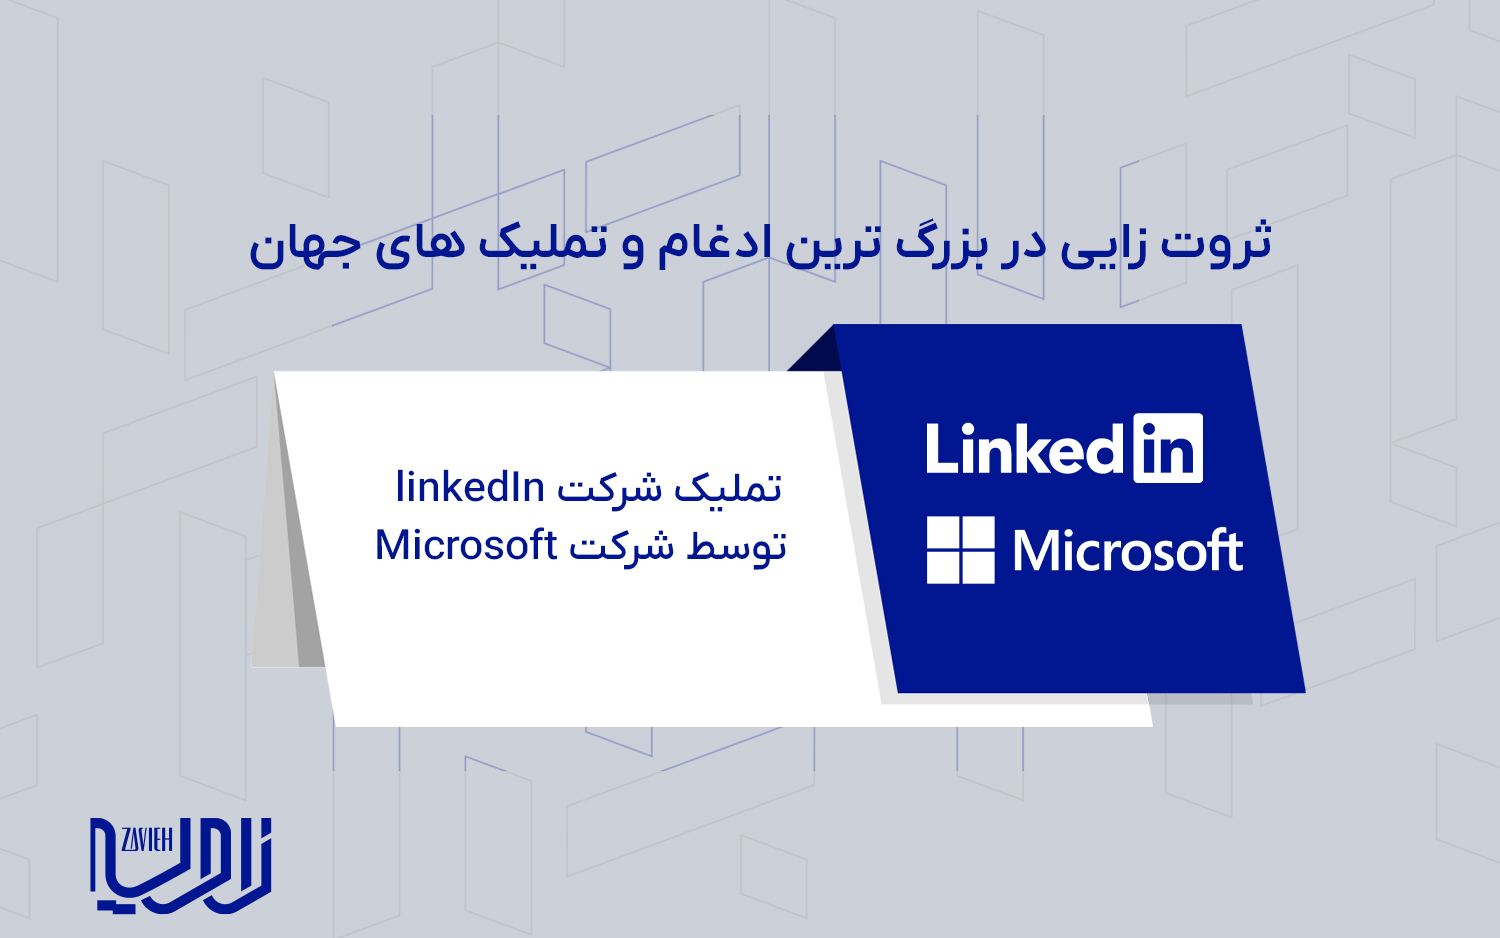 تملیک شرکت linkedIn توسط شرکت Microsoft